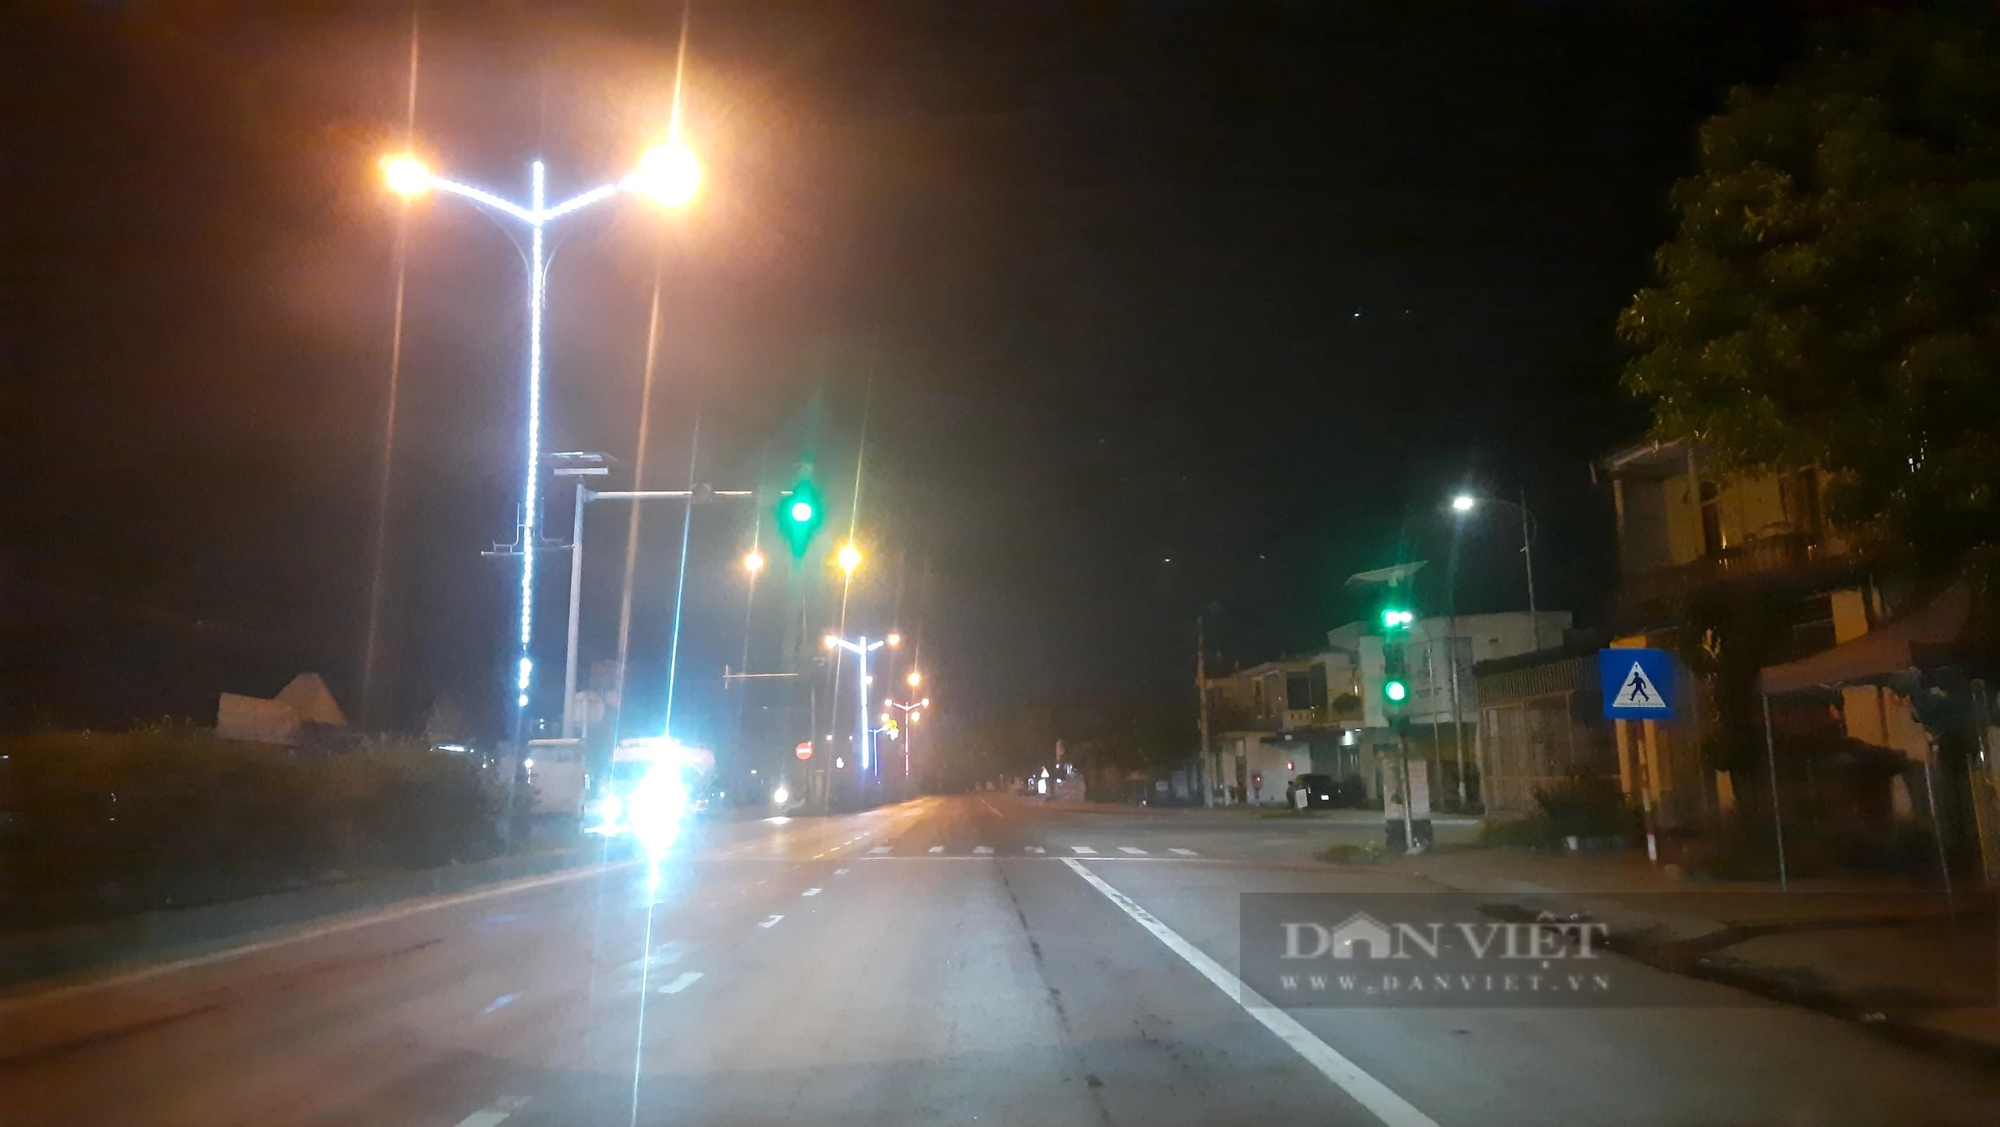 Đèn giao thông hư hỏng trên quốc lộ 1A qua Quảng Trị: Tai nạn xảy ra, ai chịu trách nhiệm- Ảnh 3.